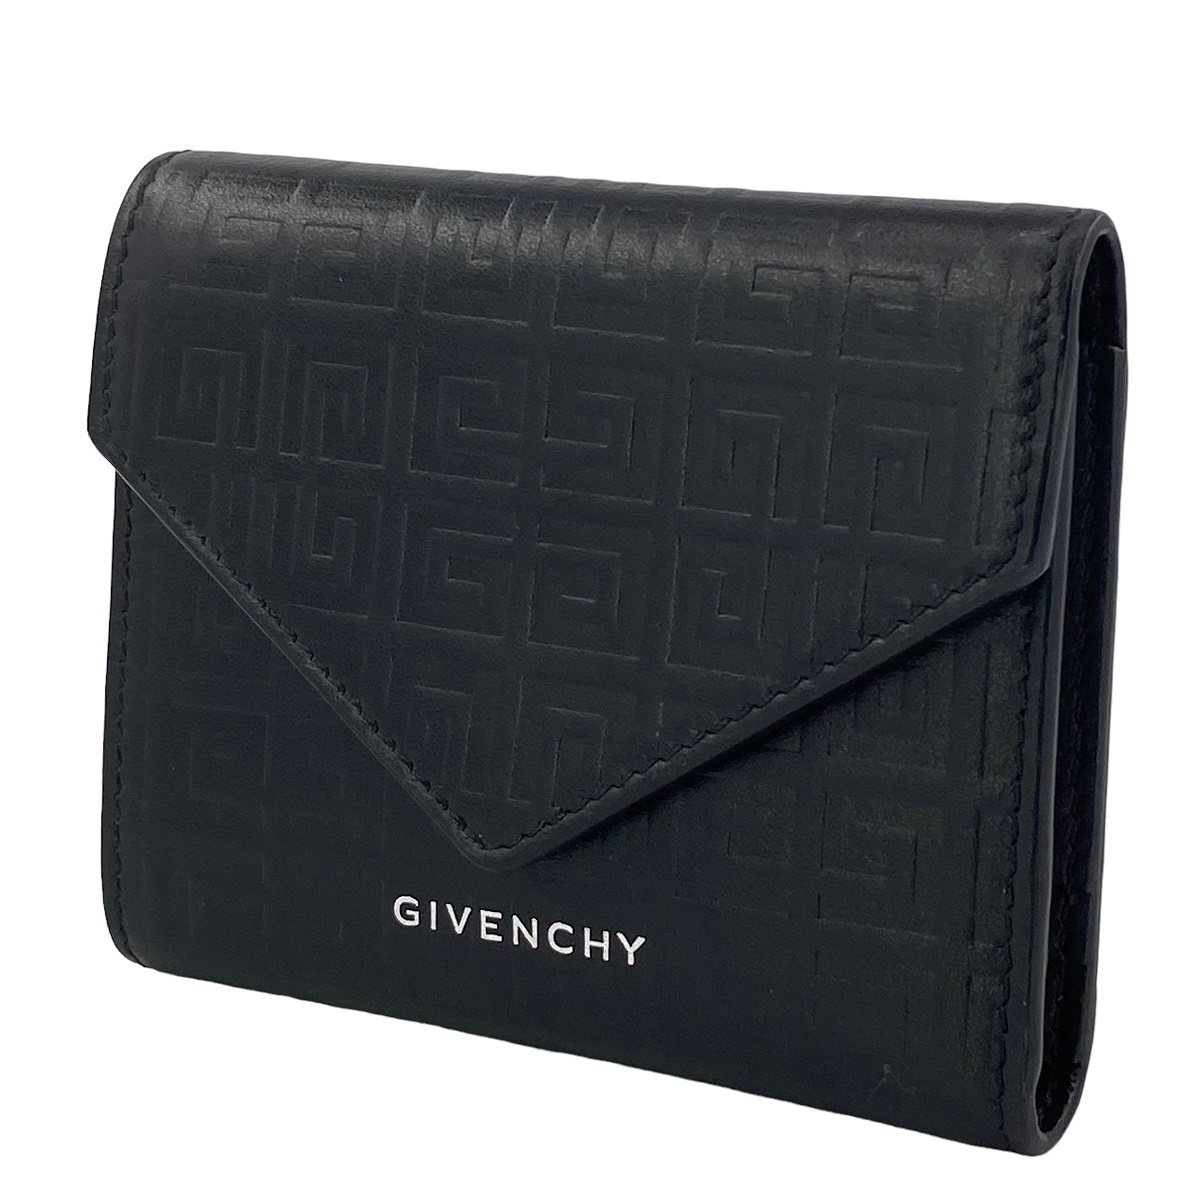 【中古】 Givenchy ジバンシィ Gカットウォレット 4Gレザー メンズ 財布 札入れ 黒 23021759 AS